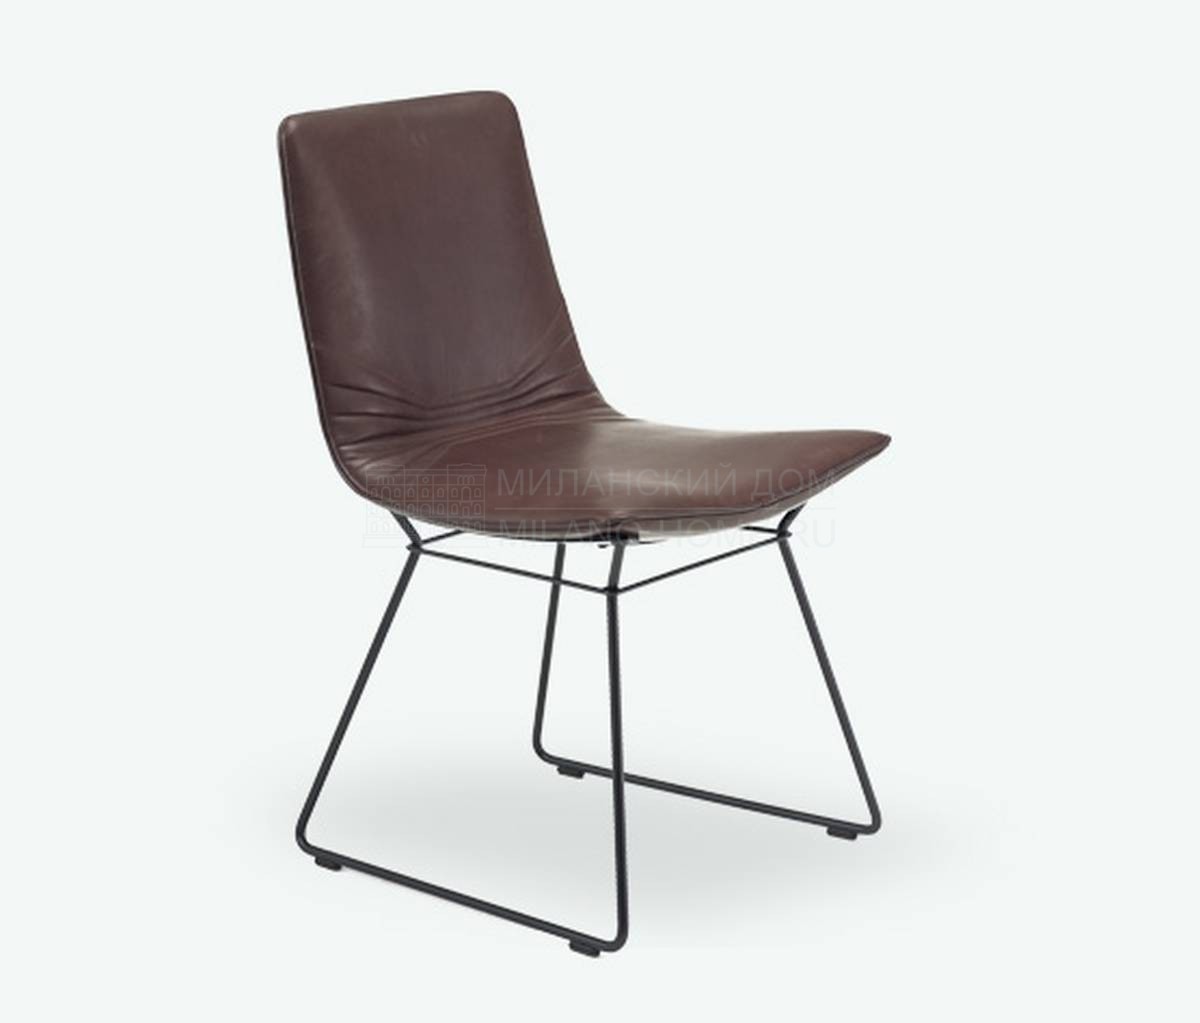 Кожаный стул Amelie chair leather из Германии фабрики FREIFRAU